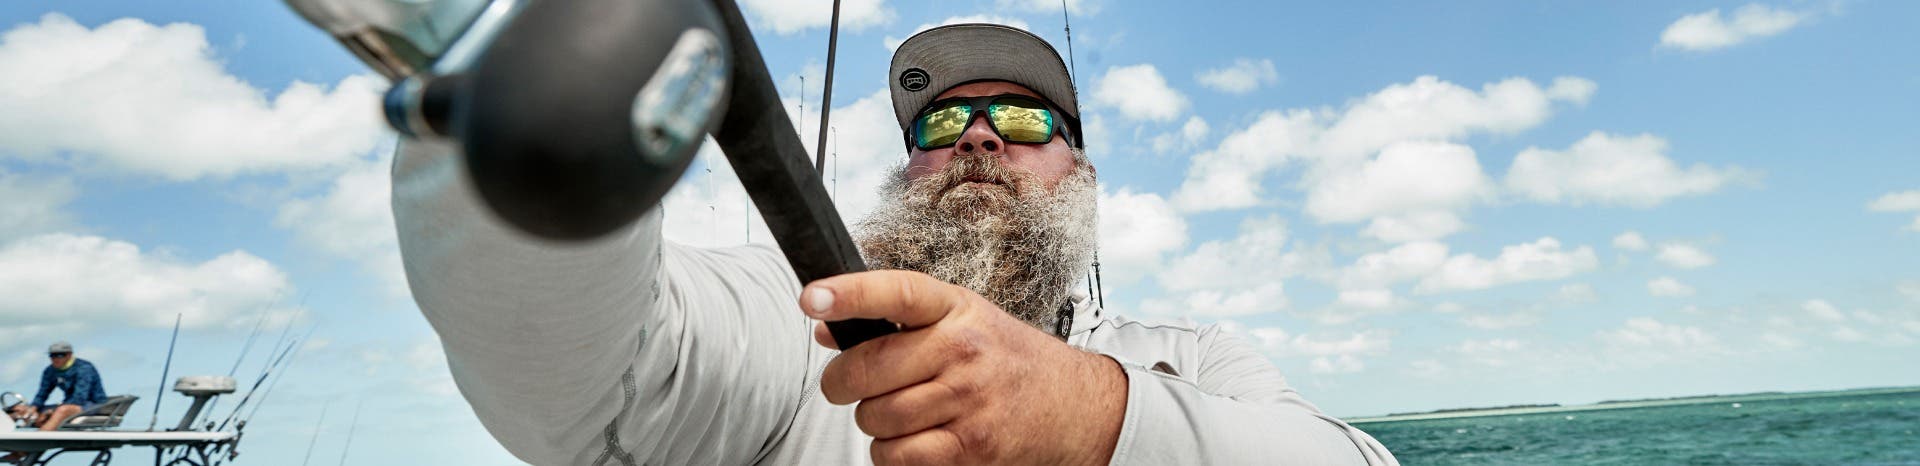 A bearded man wearing XL prescription sunglasses casts his reel in the open ocean.